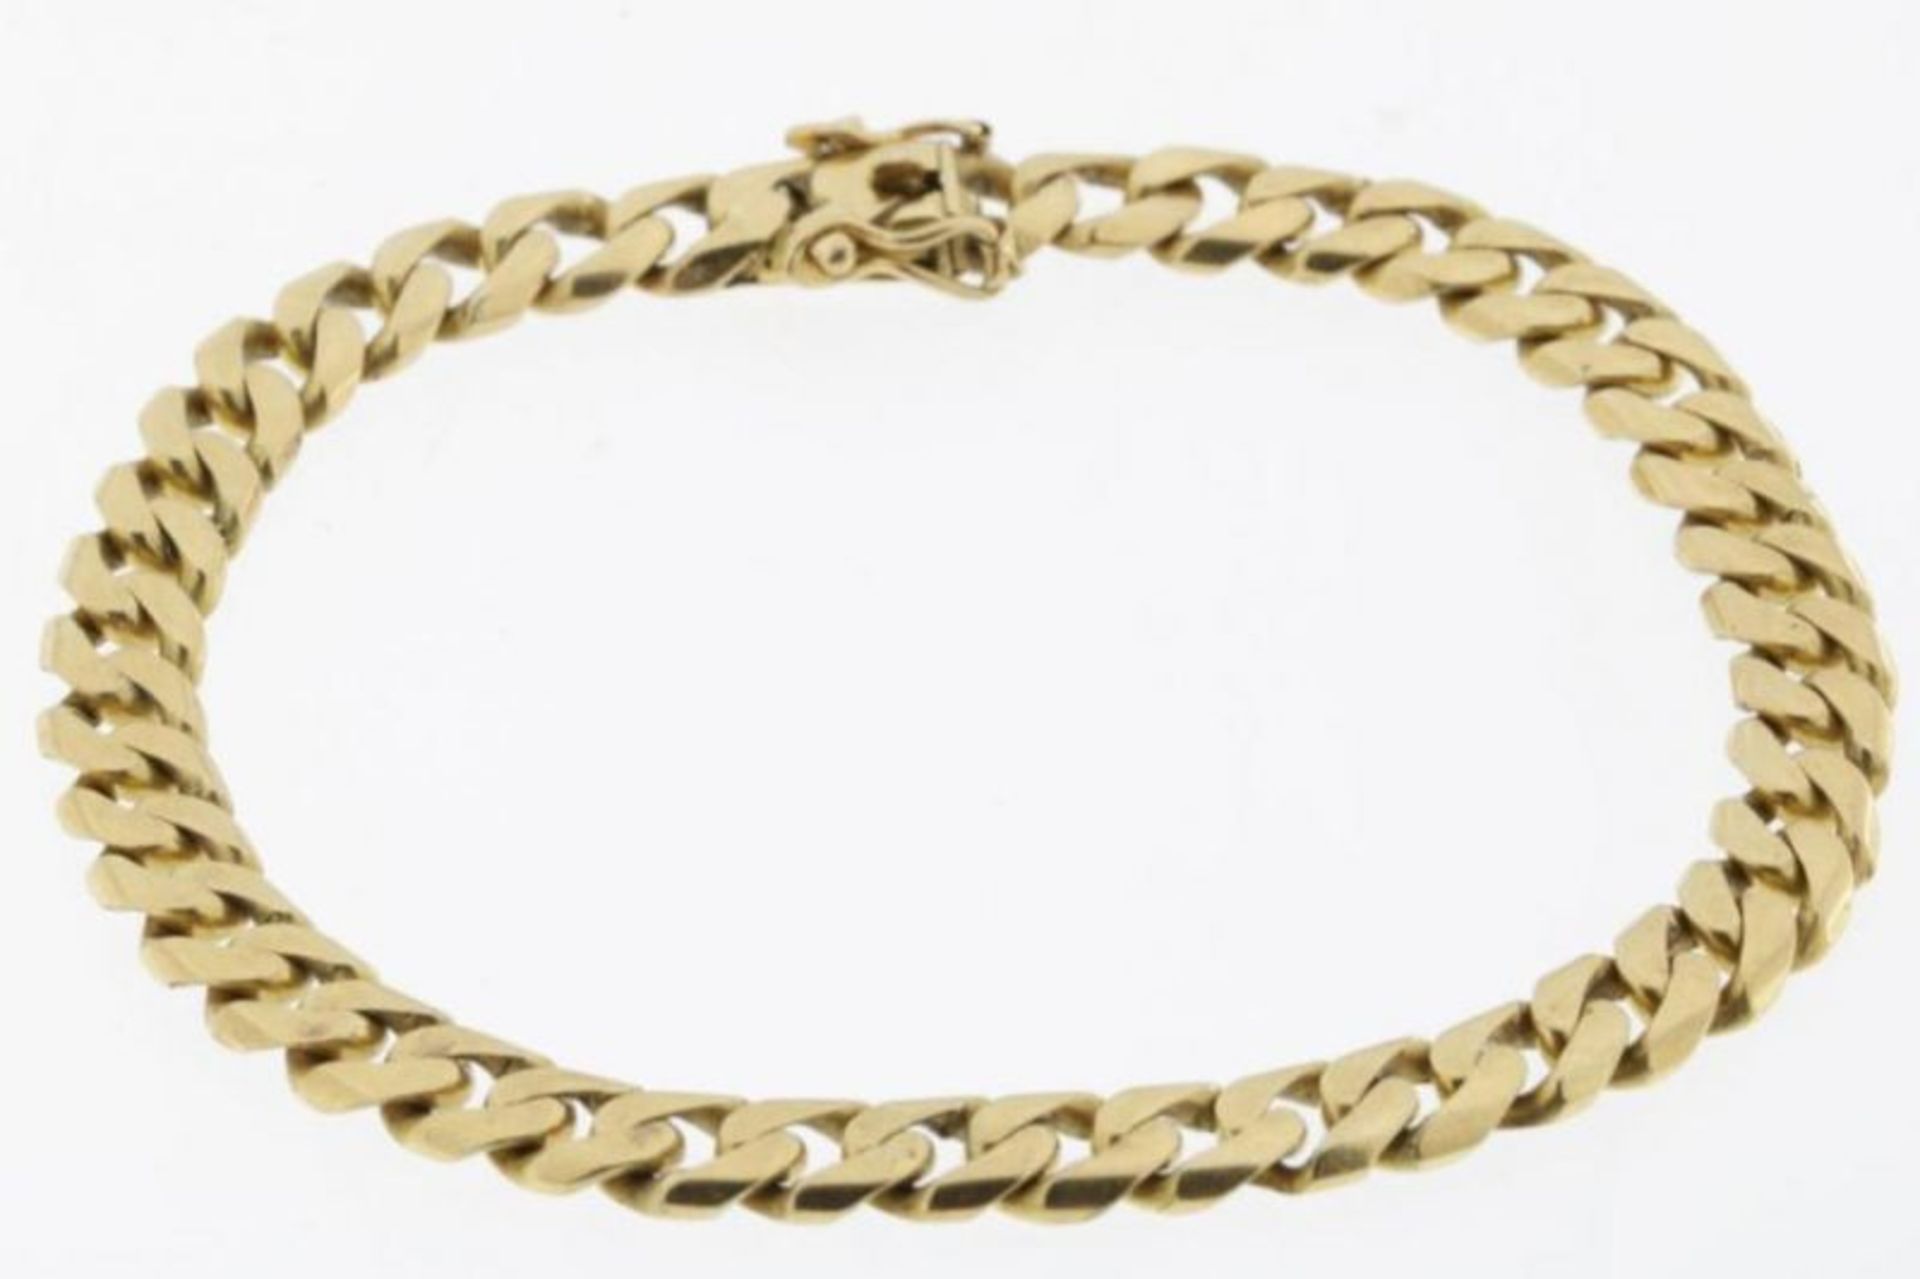 Gouden gourmet armband, geh. 585/000, gew. 26gr. A yellow golden bracelet, 585/000